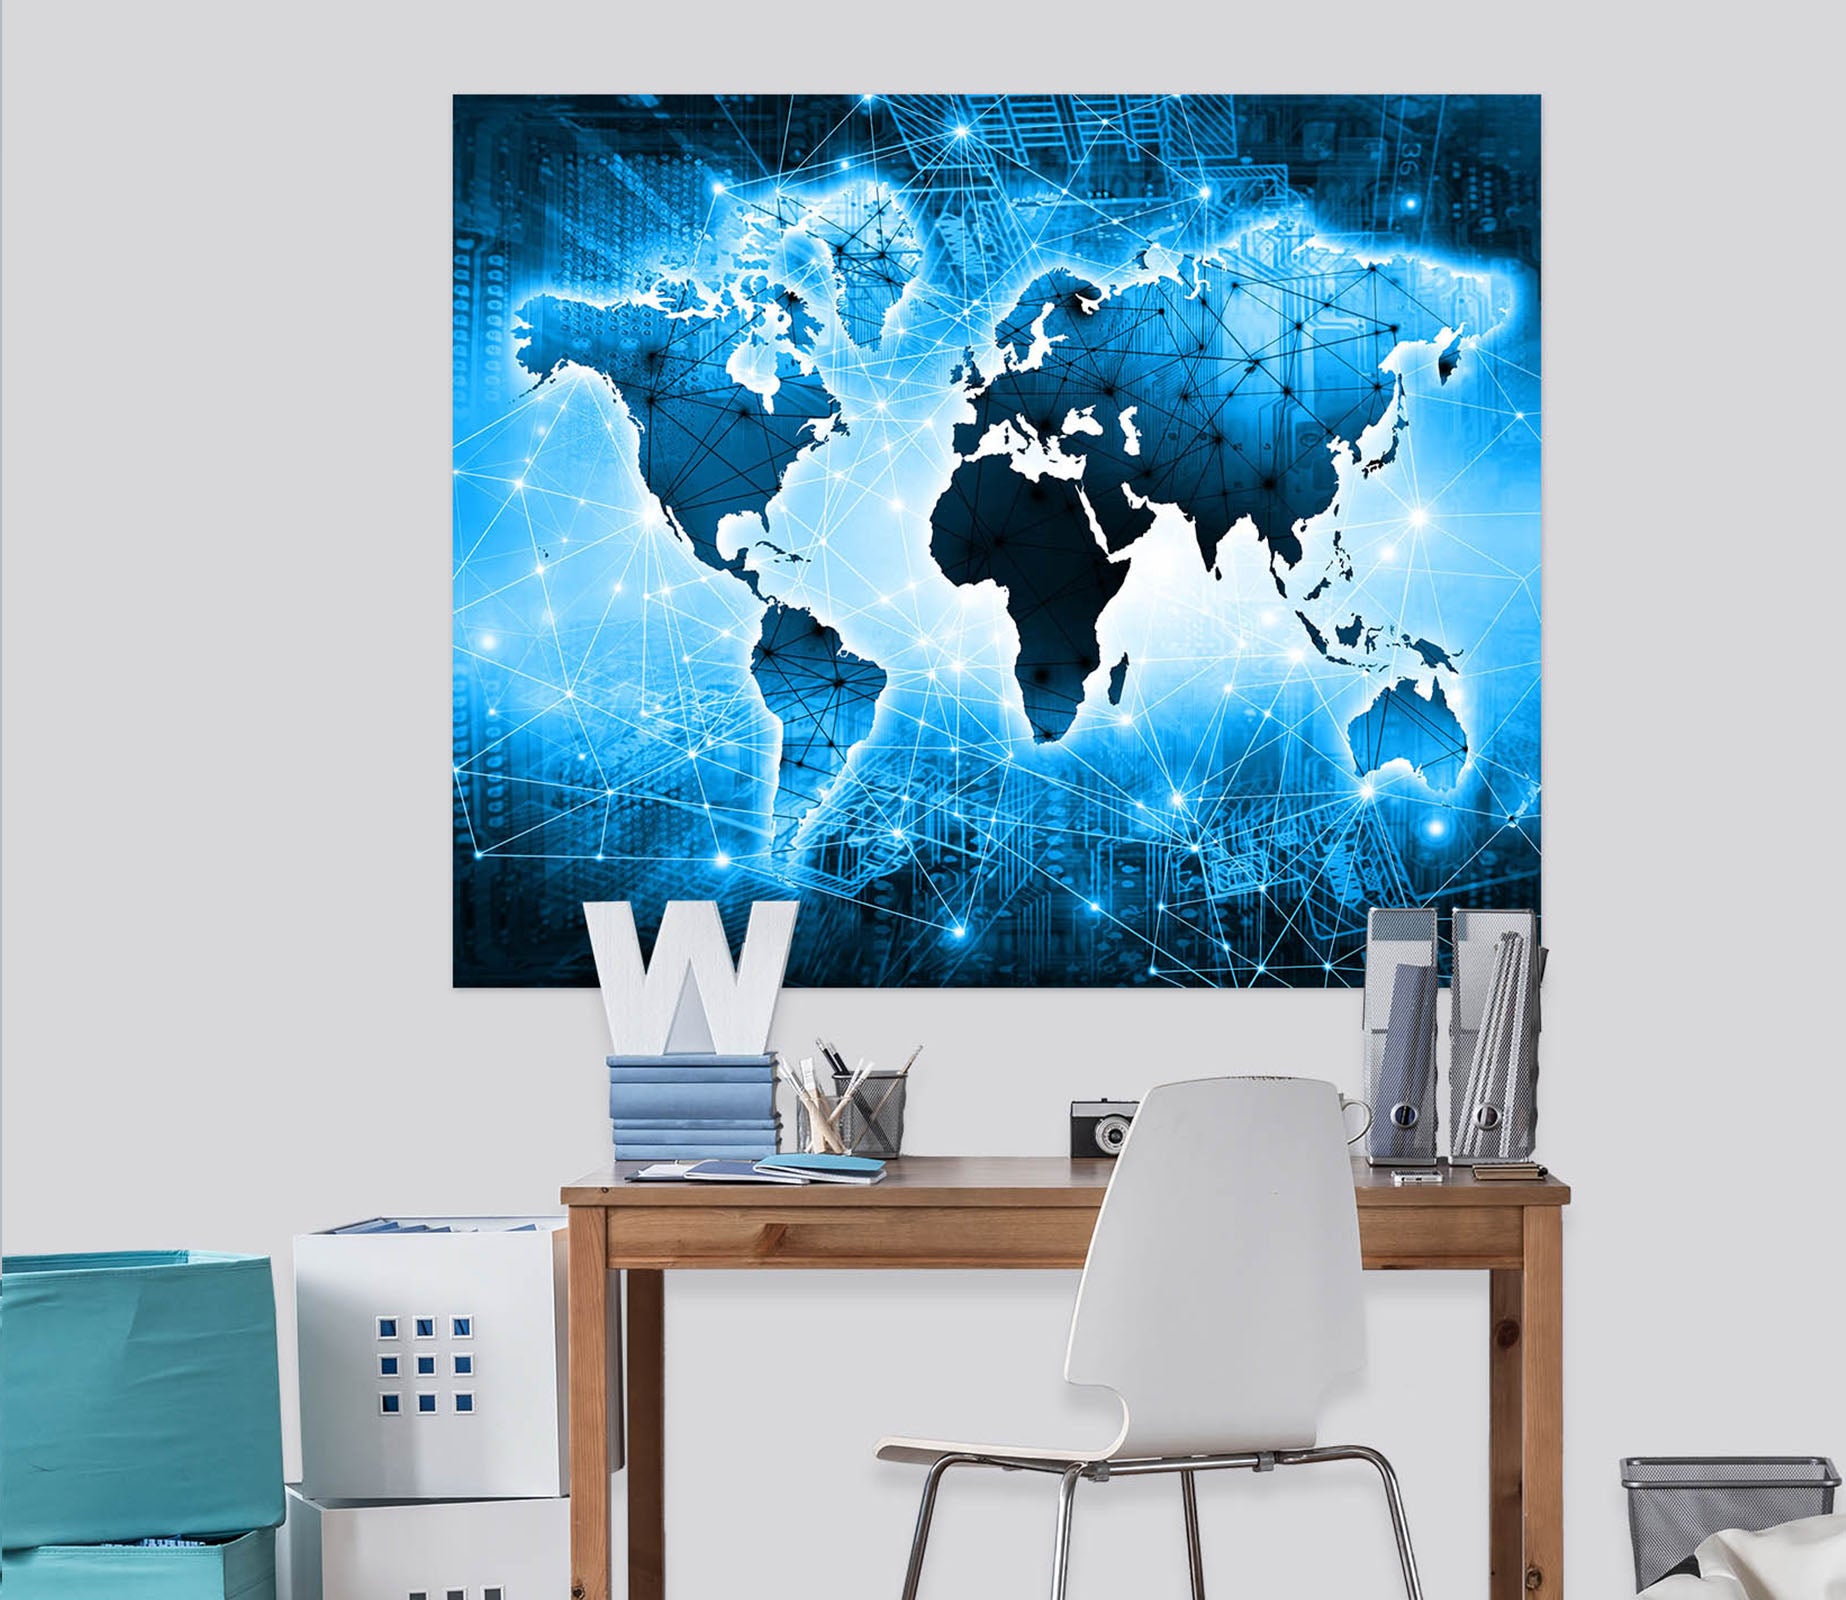 3D Blue World 221 World Map Wall Sticker